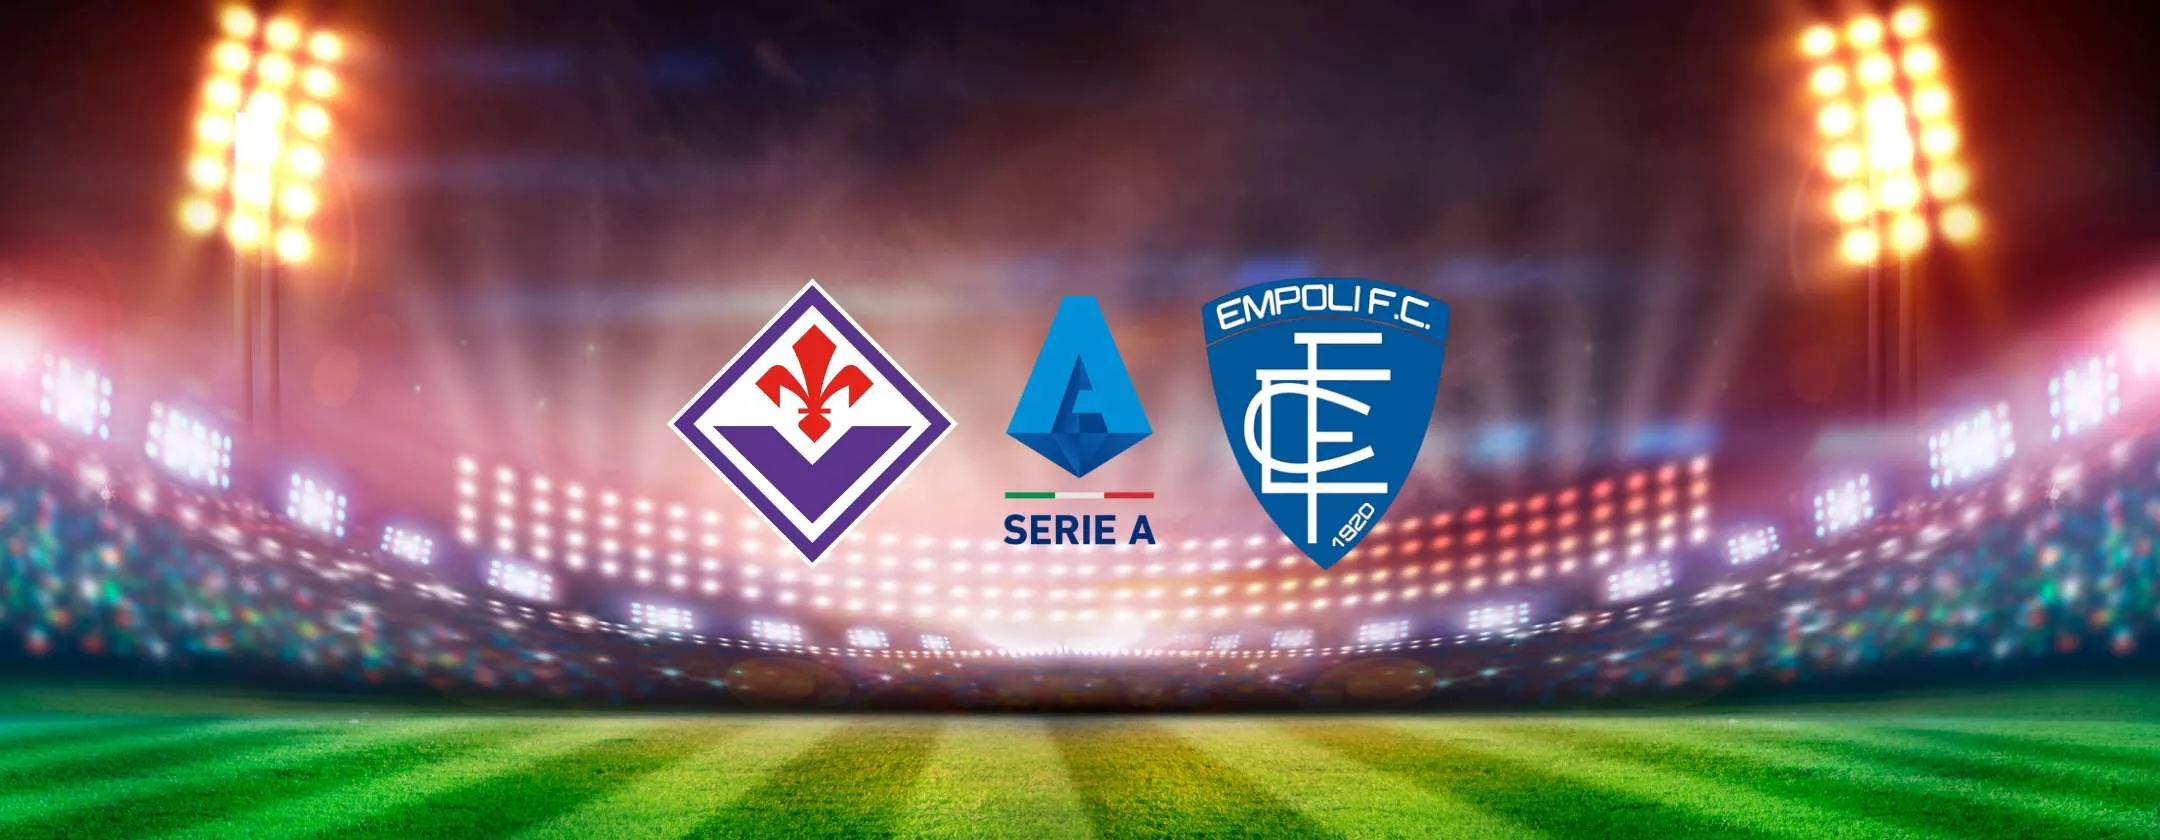 Fiorentina-Empoli, le probabili formazioni e dove vederla in TV